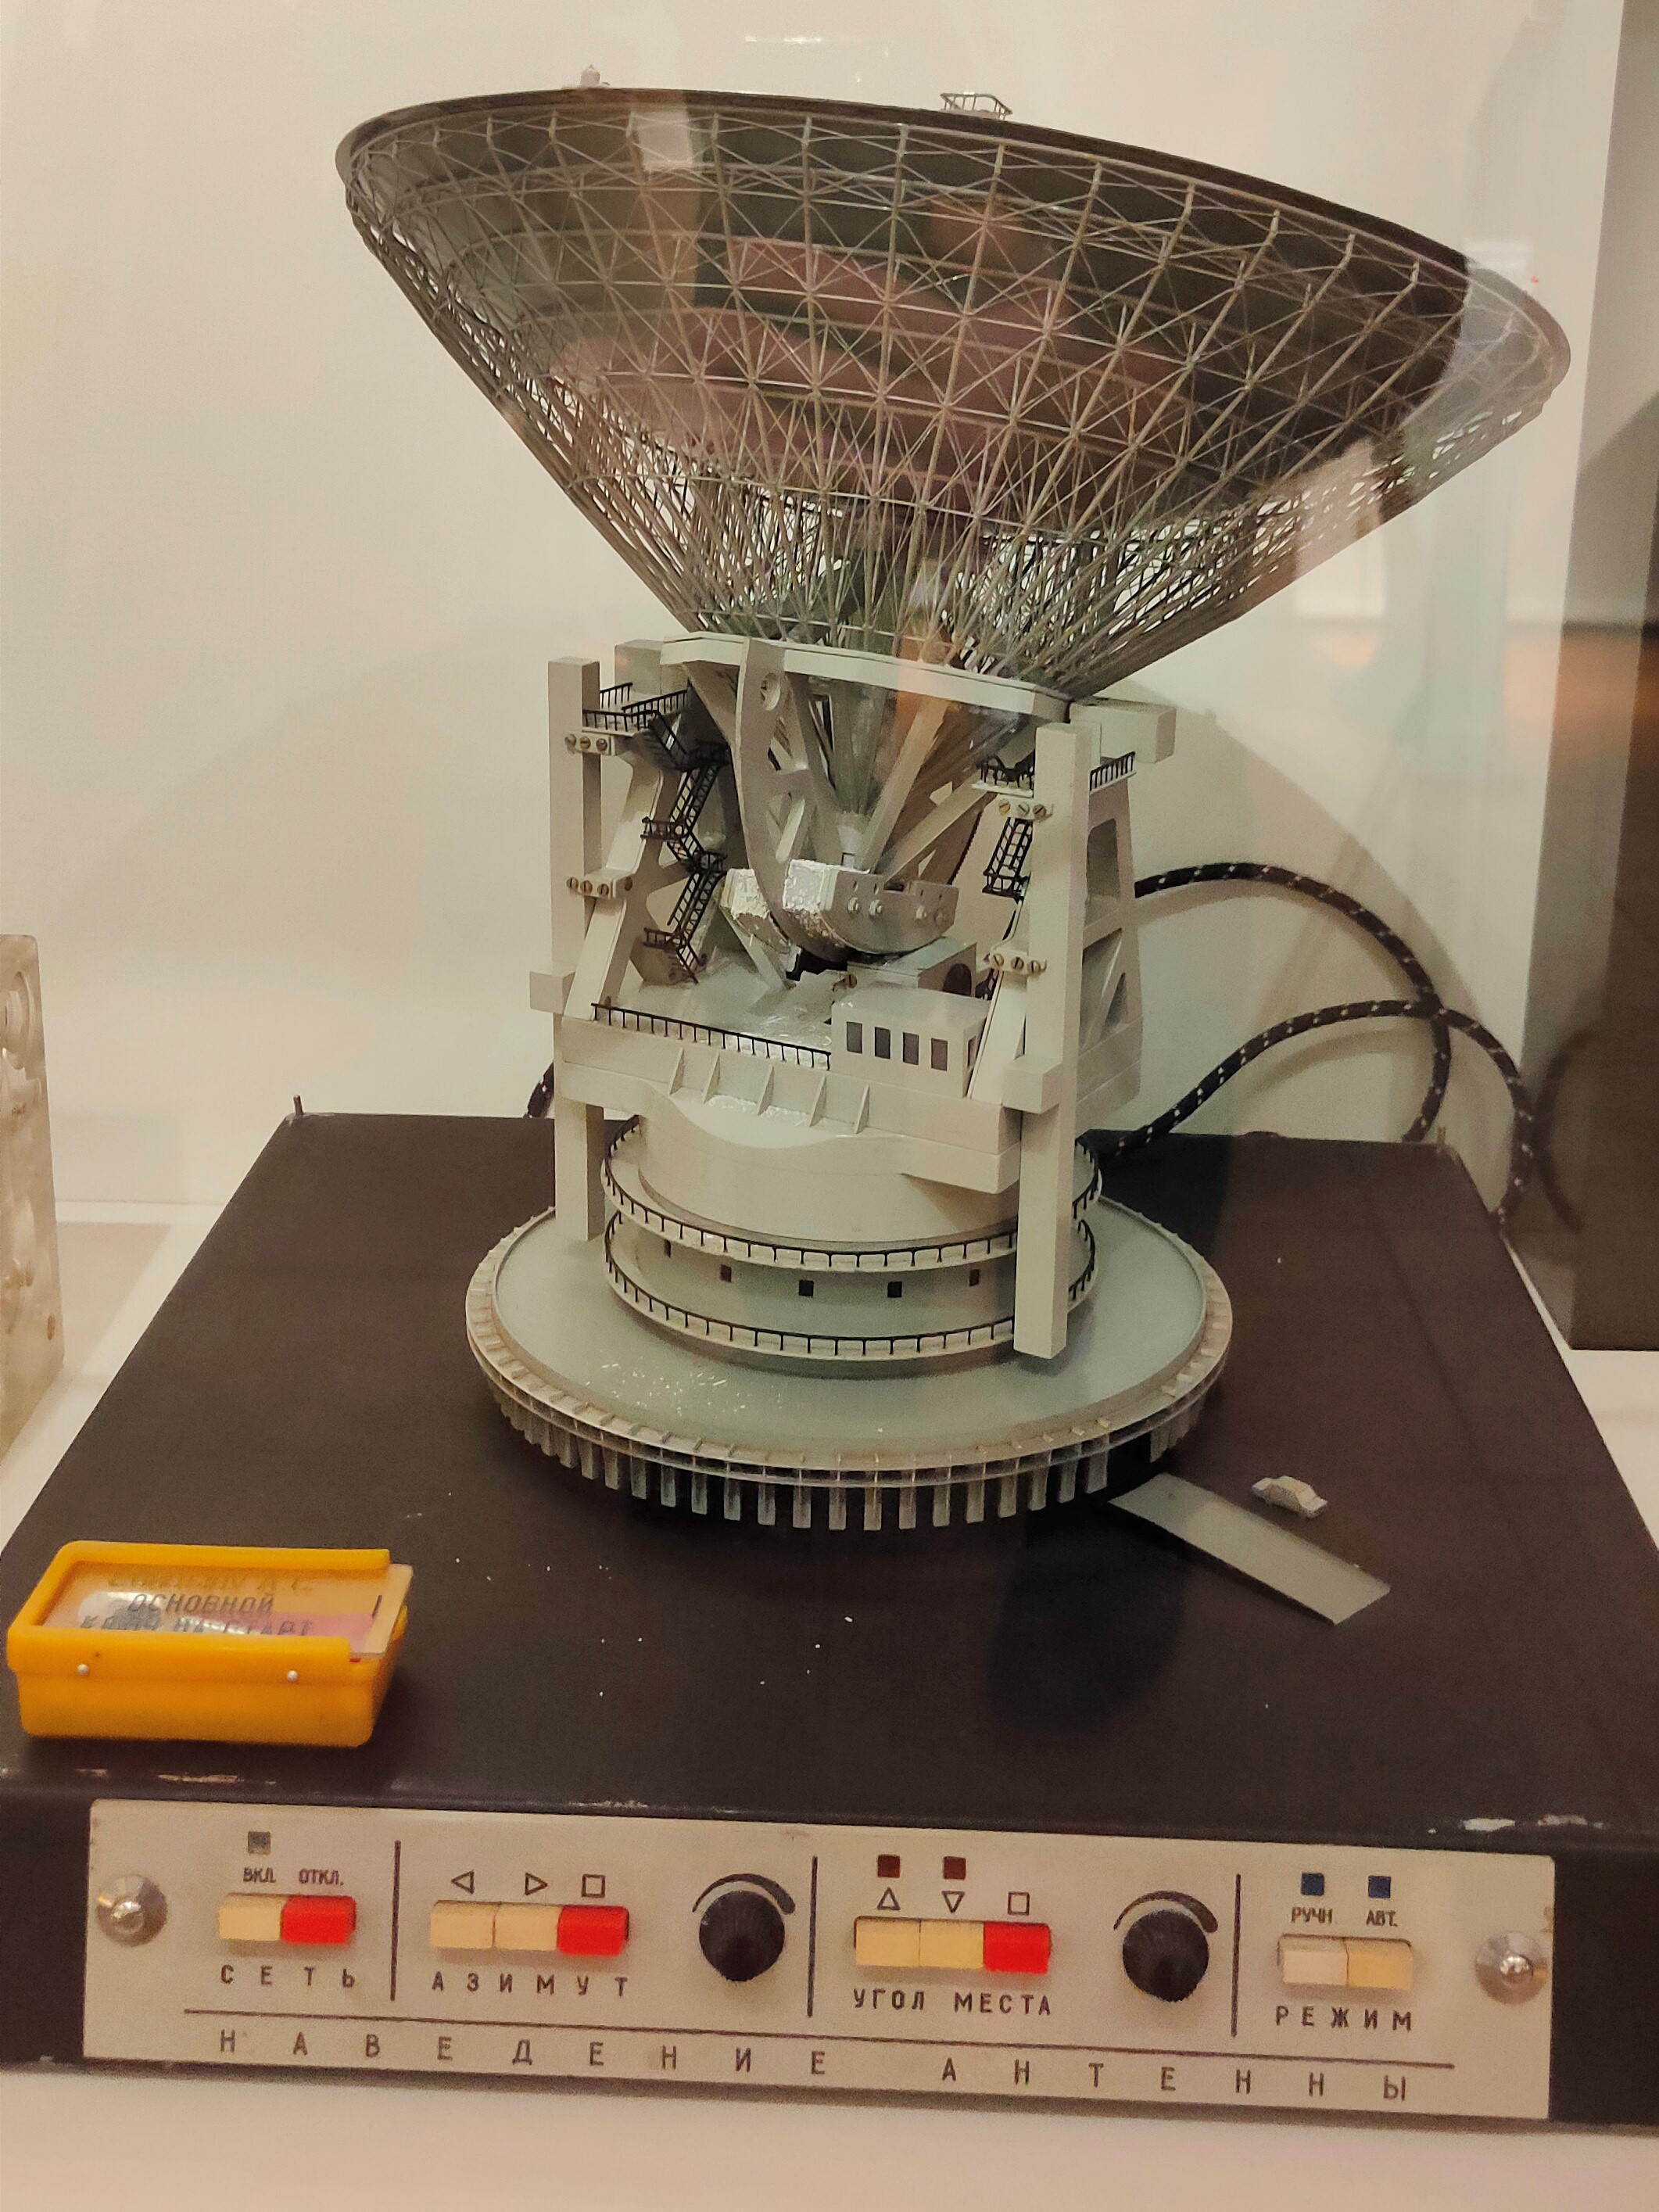  Модель антенны СМ-214АУ дальней космической связи с диаметром зеркала 70м